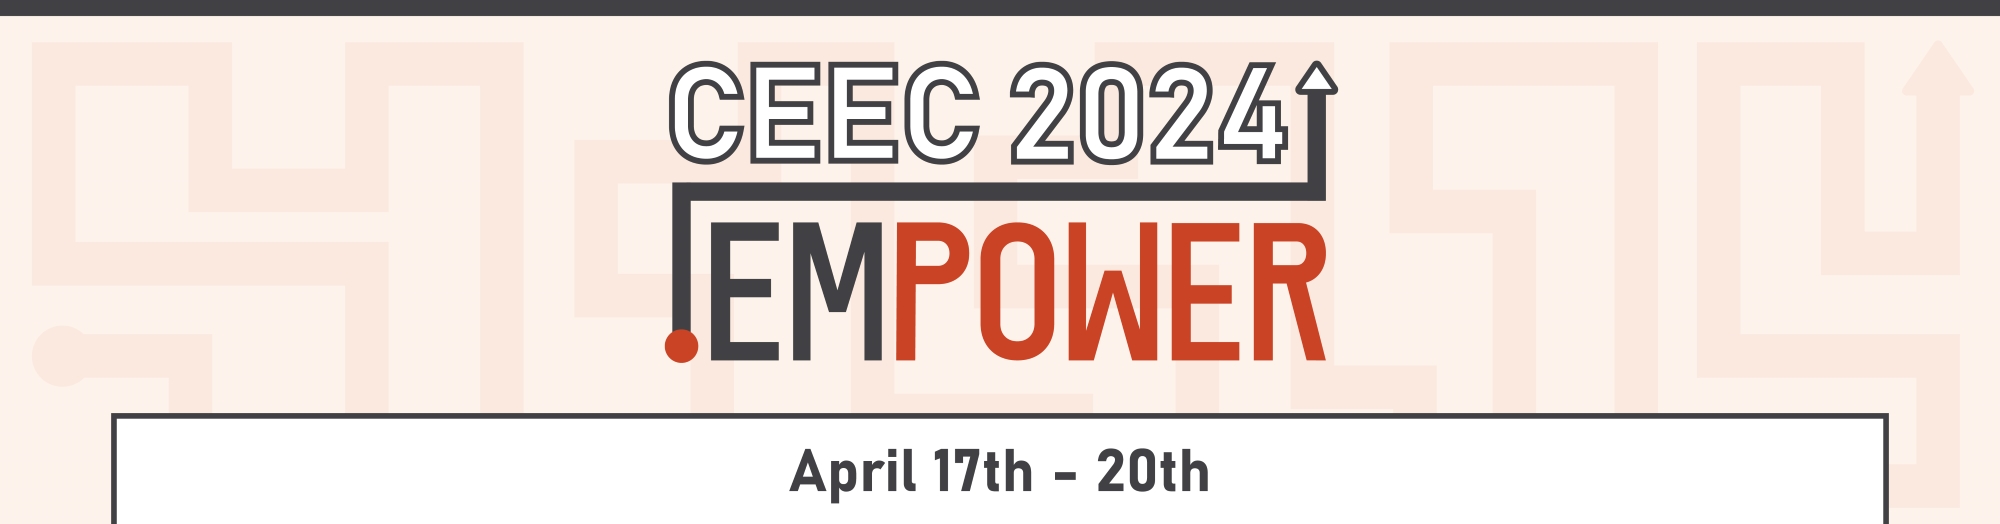 CEEC 2024